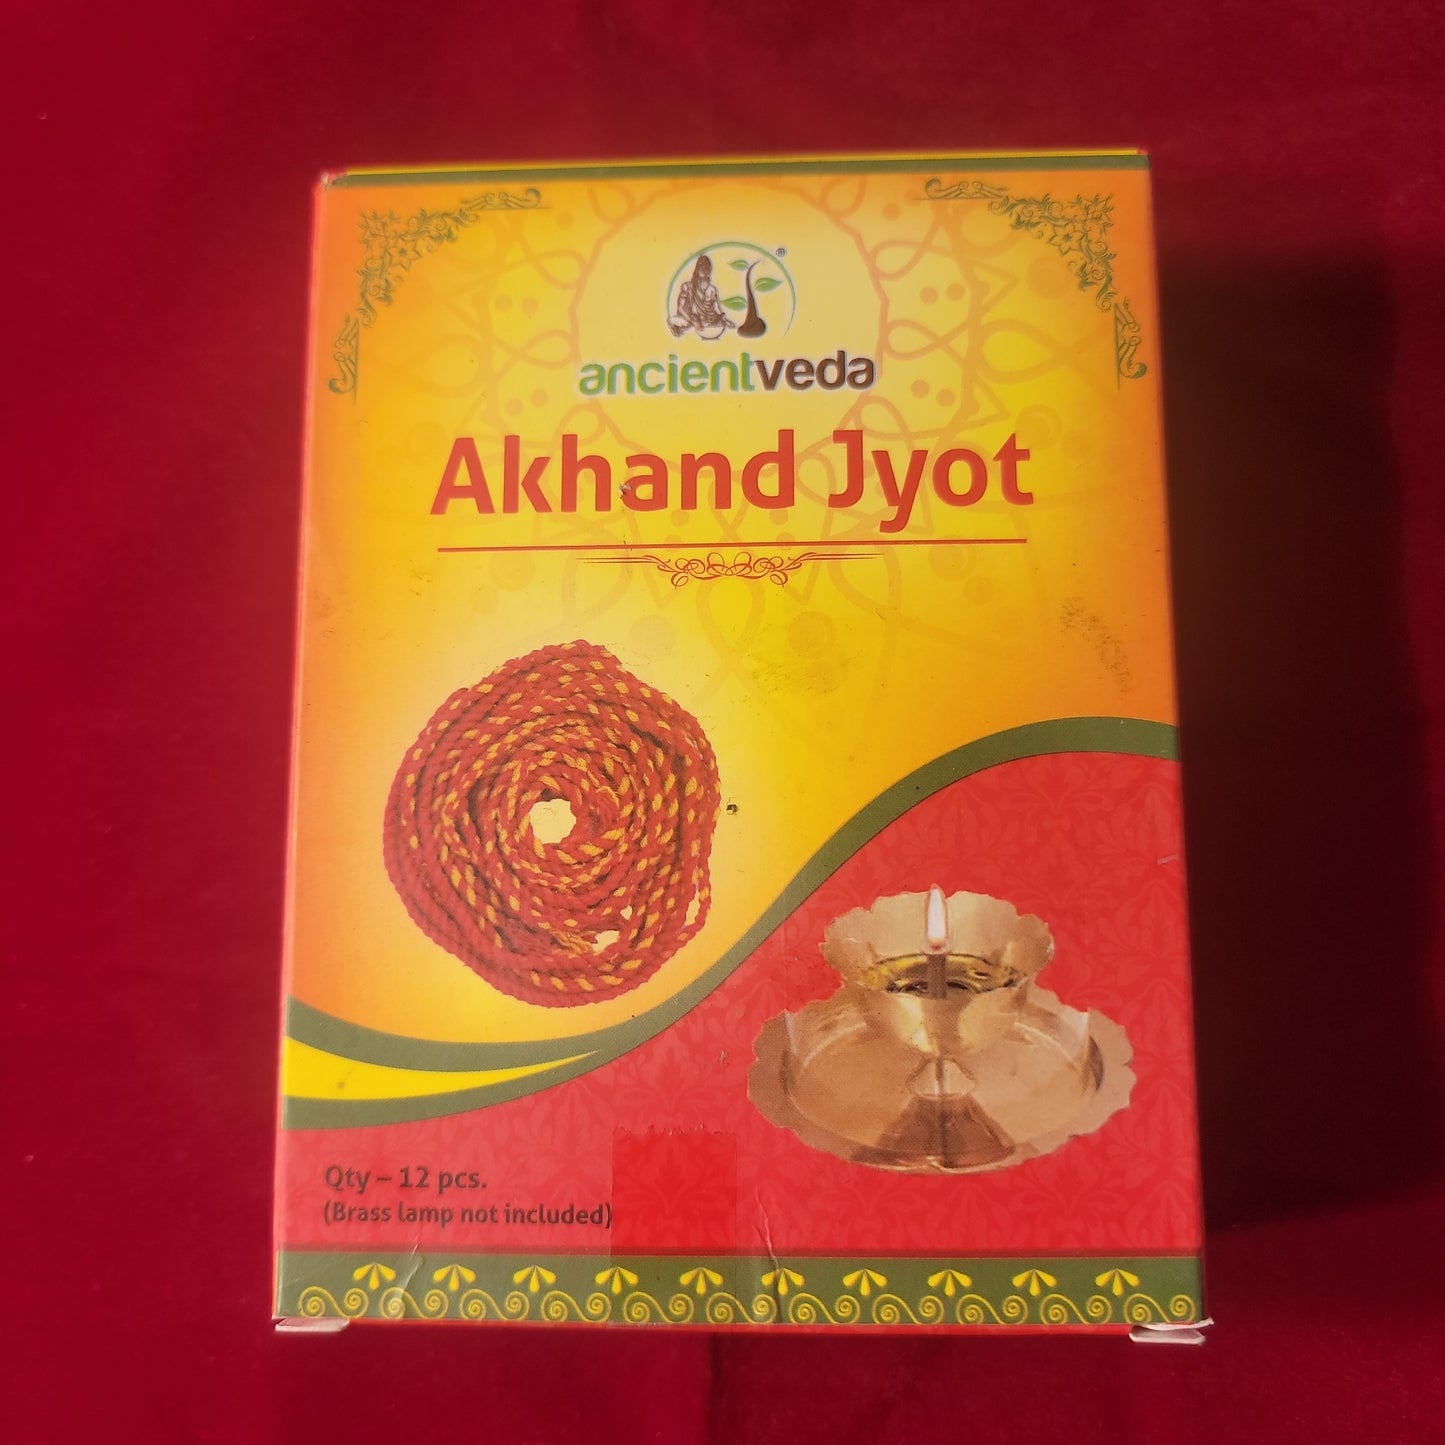 Akhand jyot